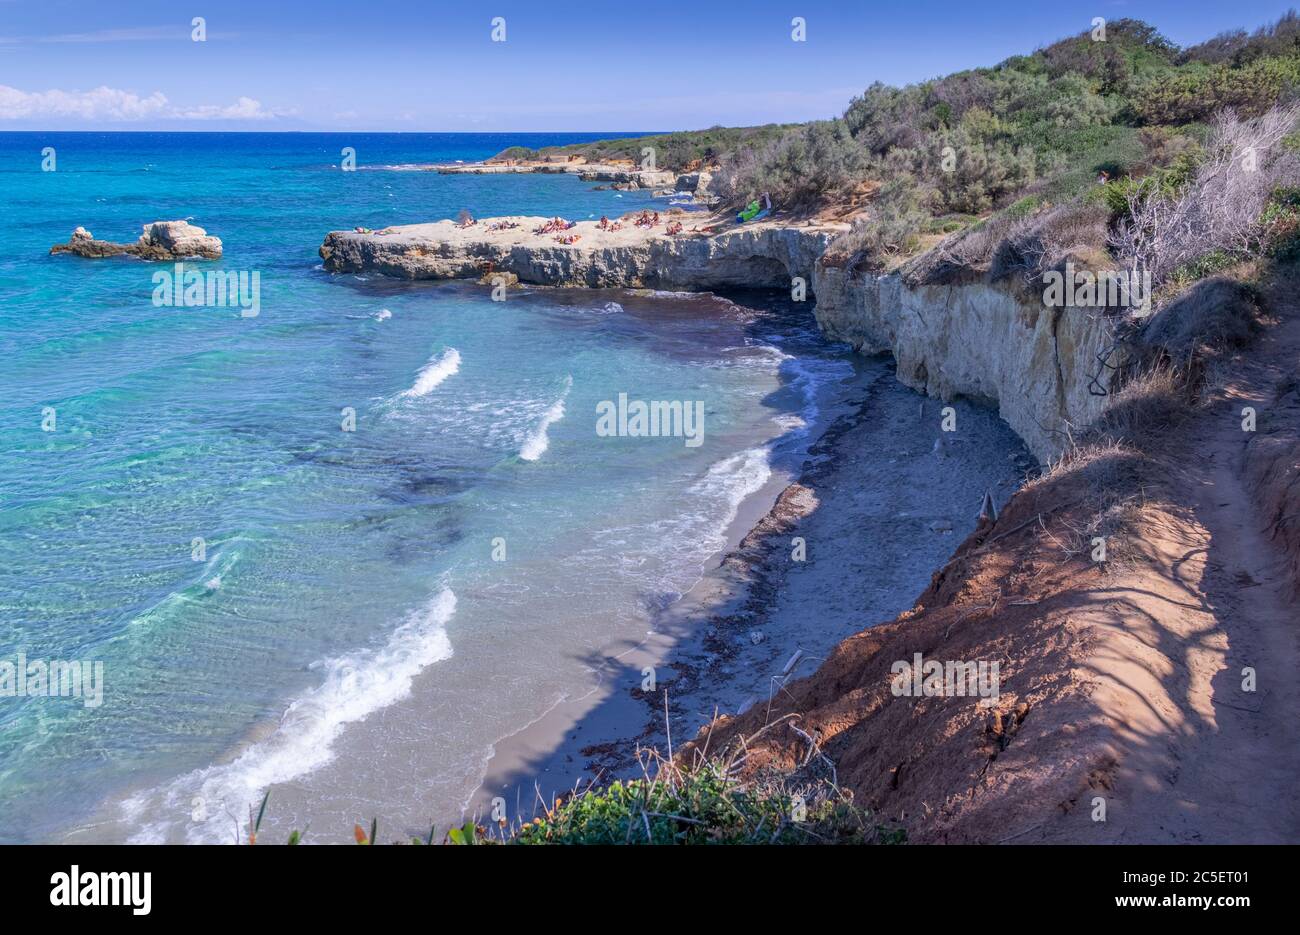 Geschützte Oase der Seen Alimini: Die Türkische Bucht ist eines der wichtigsten Ökosysteme in Salento und Apulien (Italien). Stockfoto